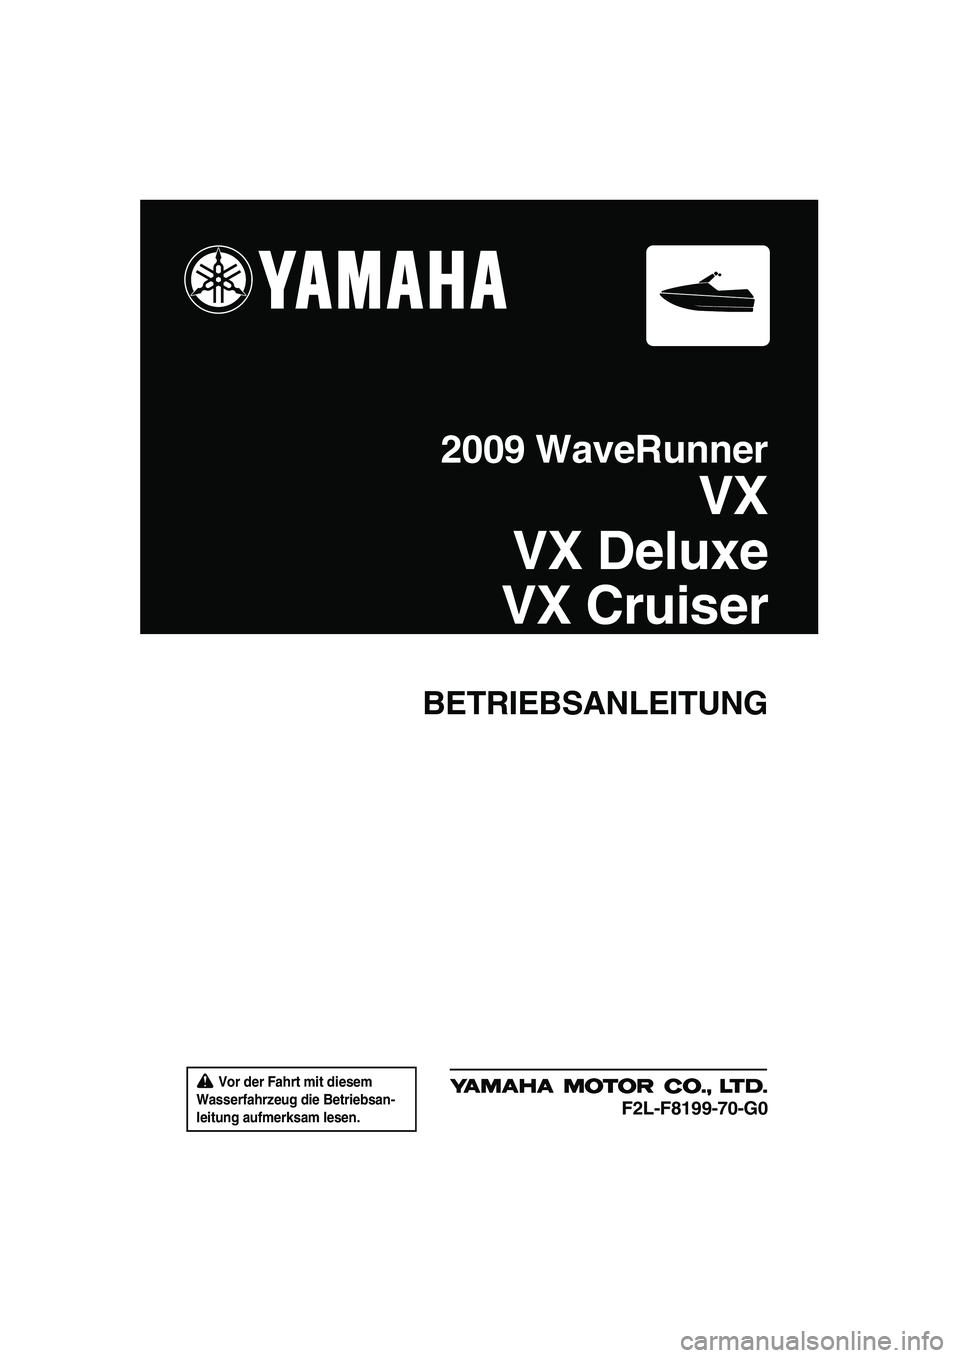 YAMAHA VX SPORT 2009  Betriebsanleitungen (in German)  Vor der Fahrt mit diesem 
Wasserfahrzeug die Betriebsan-
leitung aufmerksam lesen.
BETRIEBSANLEITUNG
2009 WaveRunner
VX
VX Deluxe
VX Cruiser
F2L-F8199-70-G0
UF2L70G0.book  Page 1  Tuesday, June 24, 2